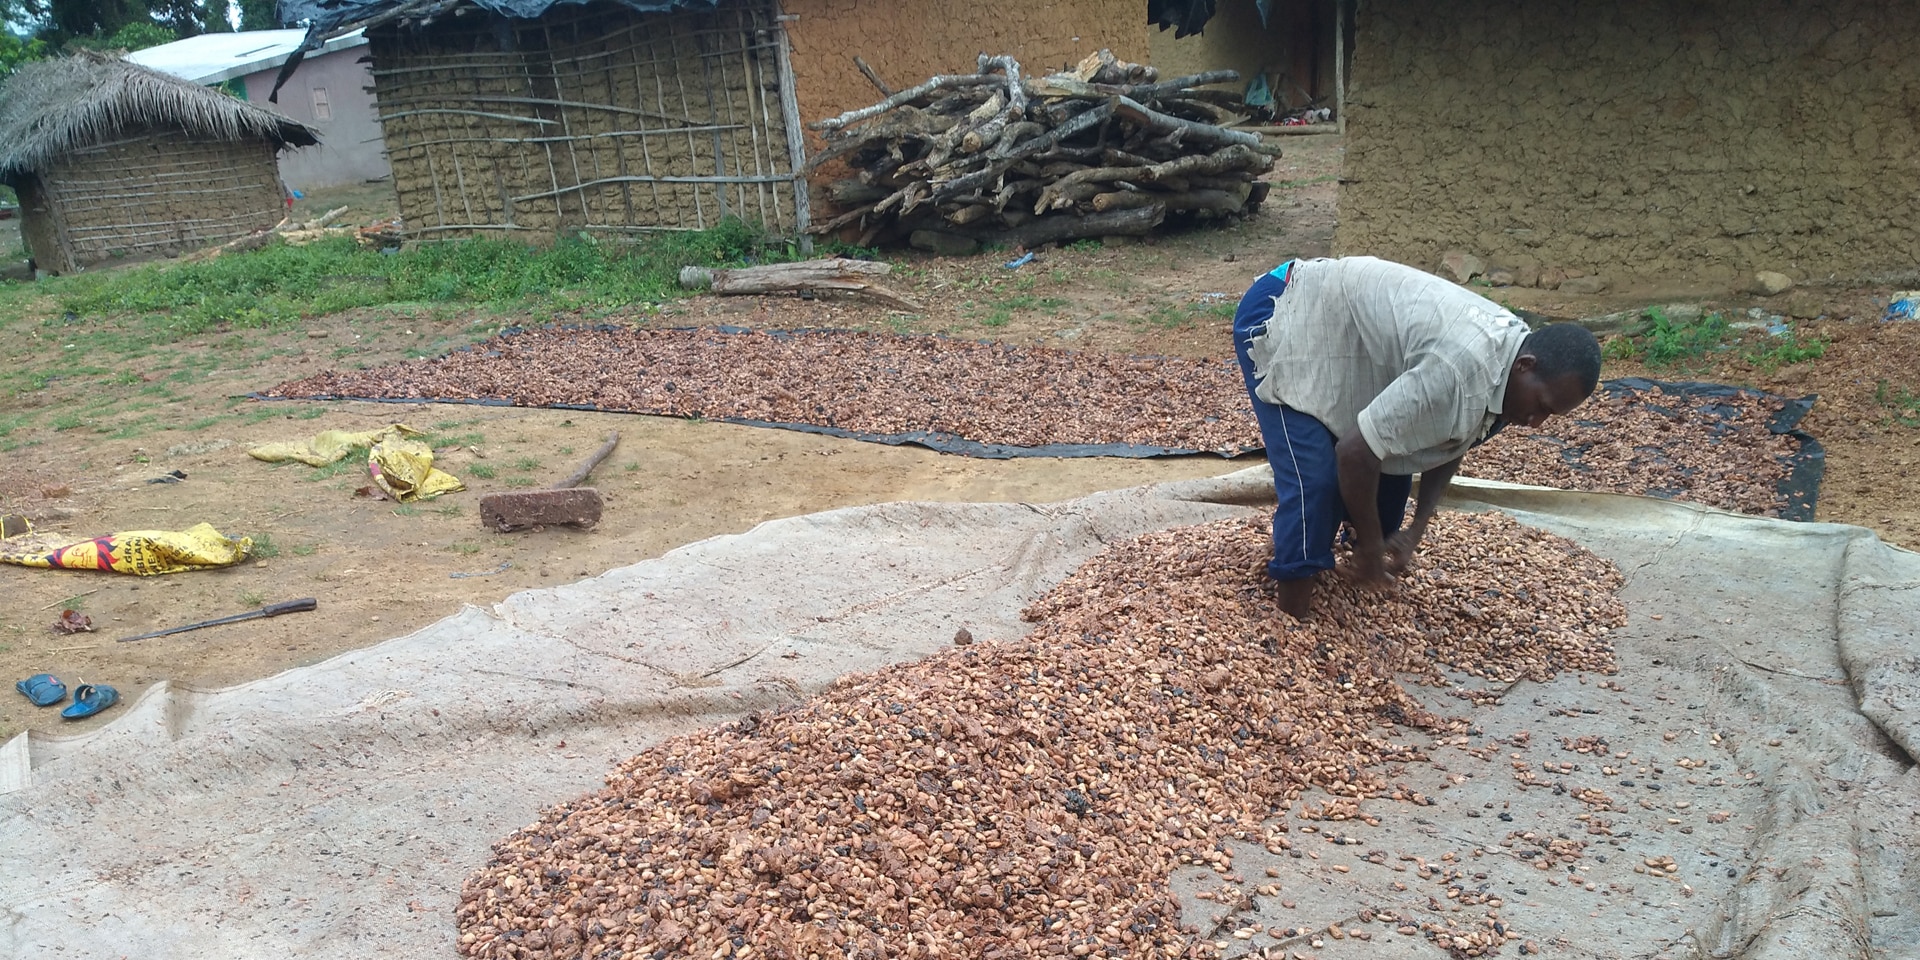  Un produttore di cacao sparge semi di cacao su un telo di plastica per l’essiccazione. 